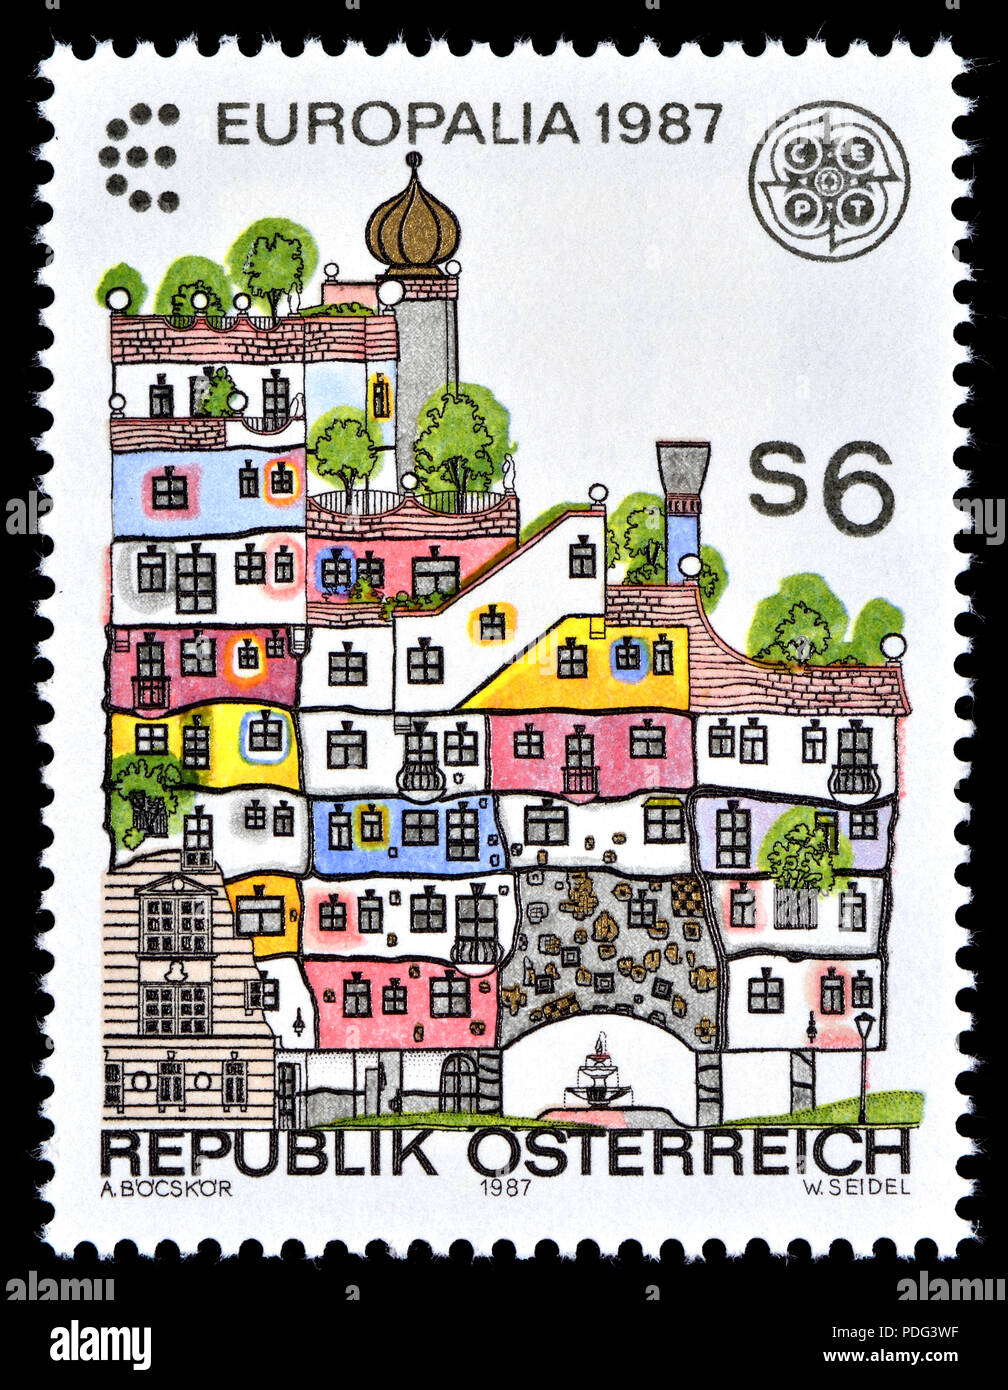 Design d'enveloppe vintage avec timbres-poste. Illustration vectorielle  Vecteur par ©jannystockphoto 30394597